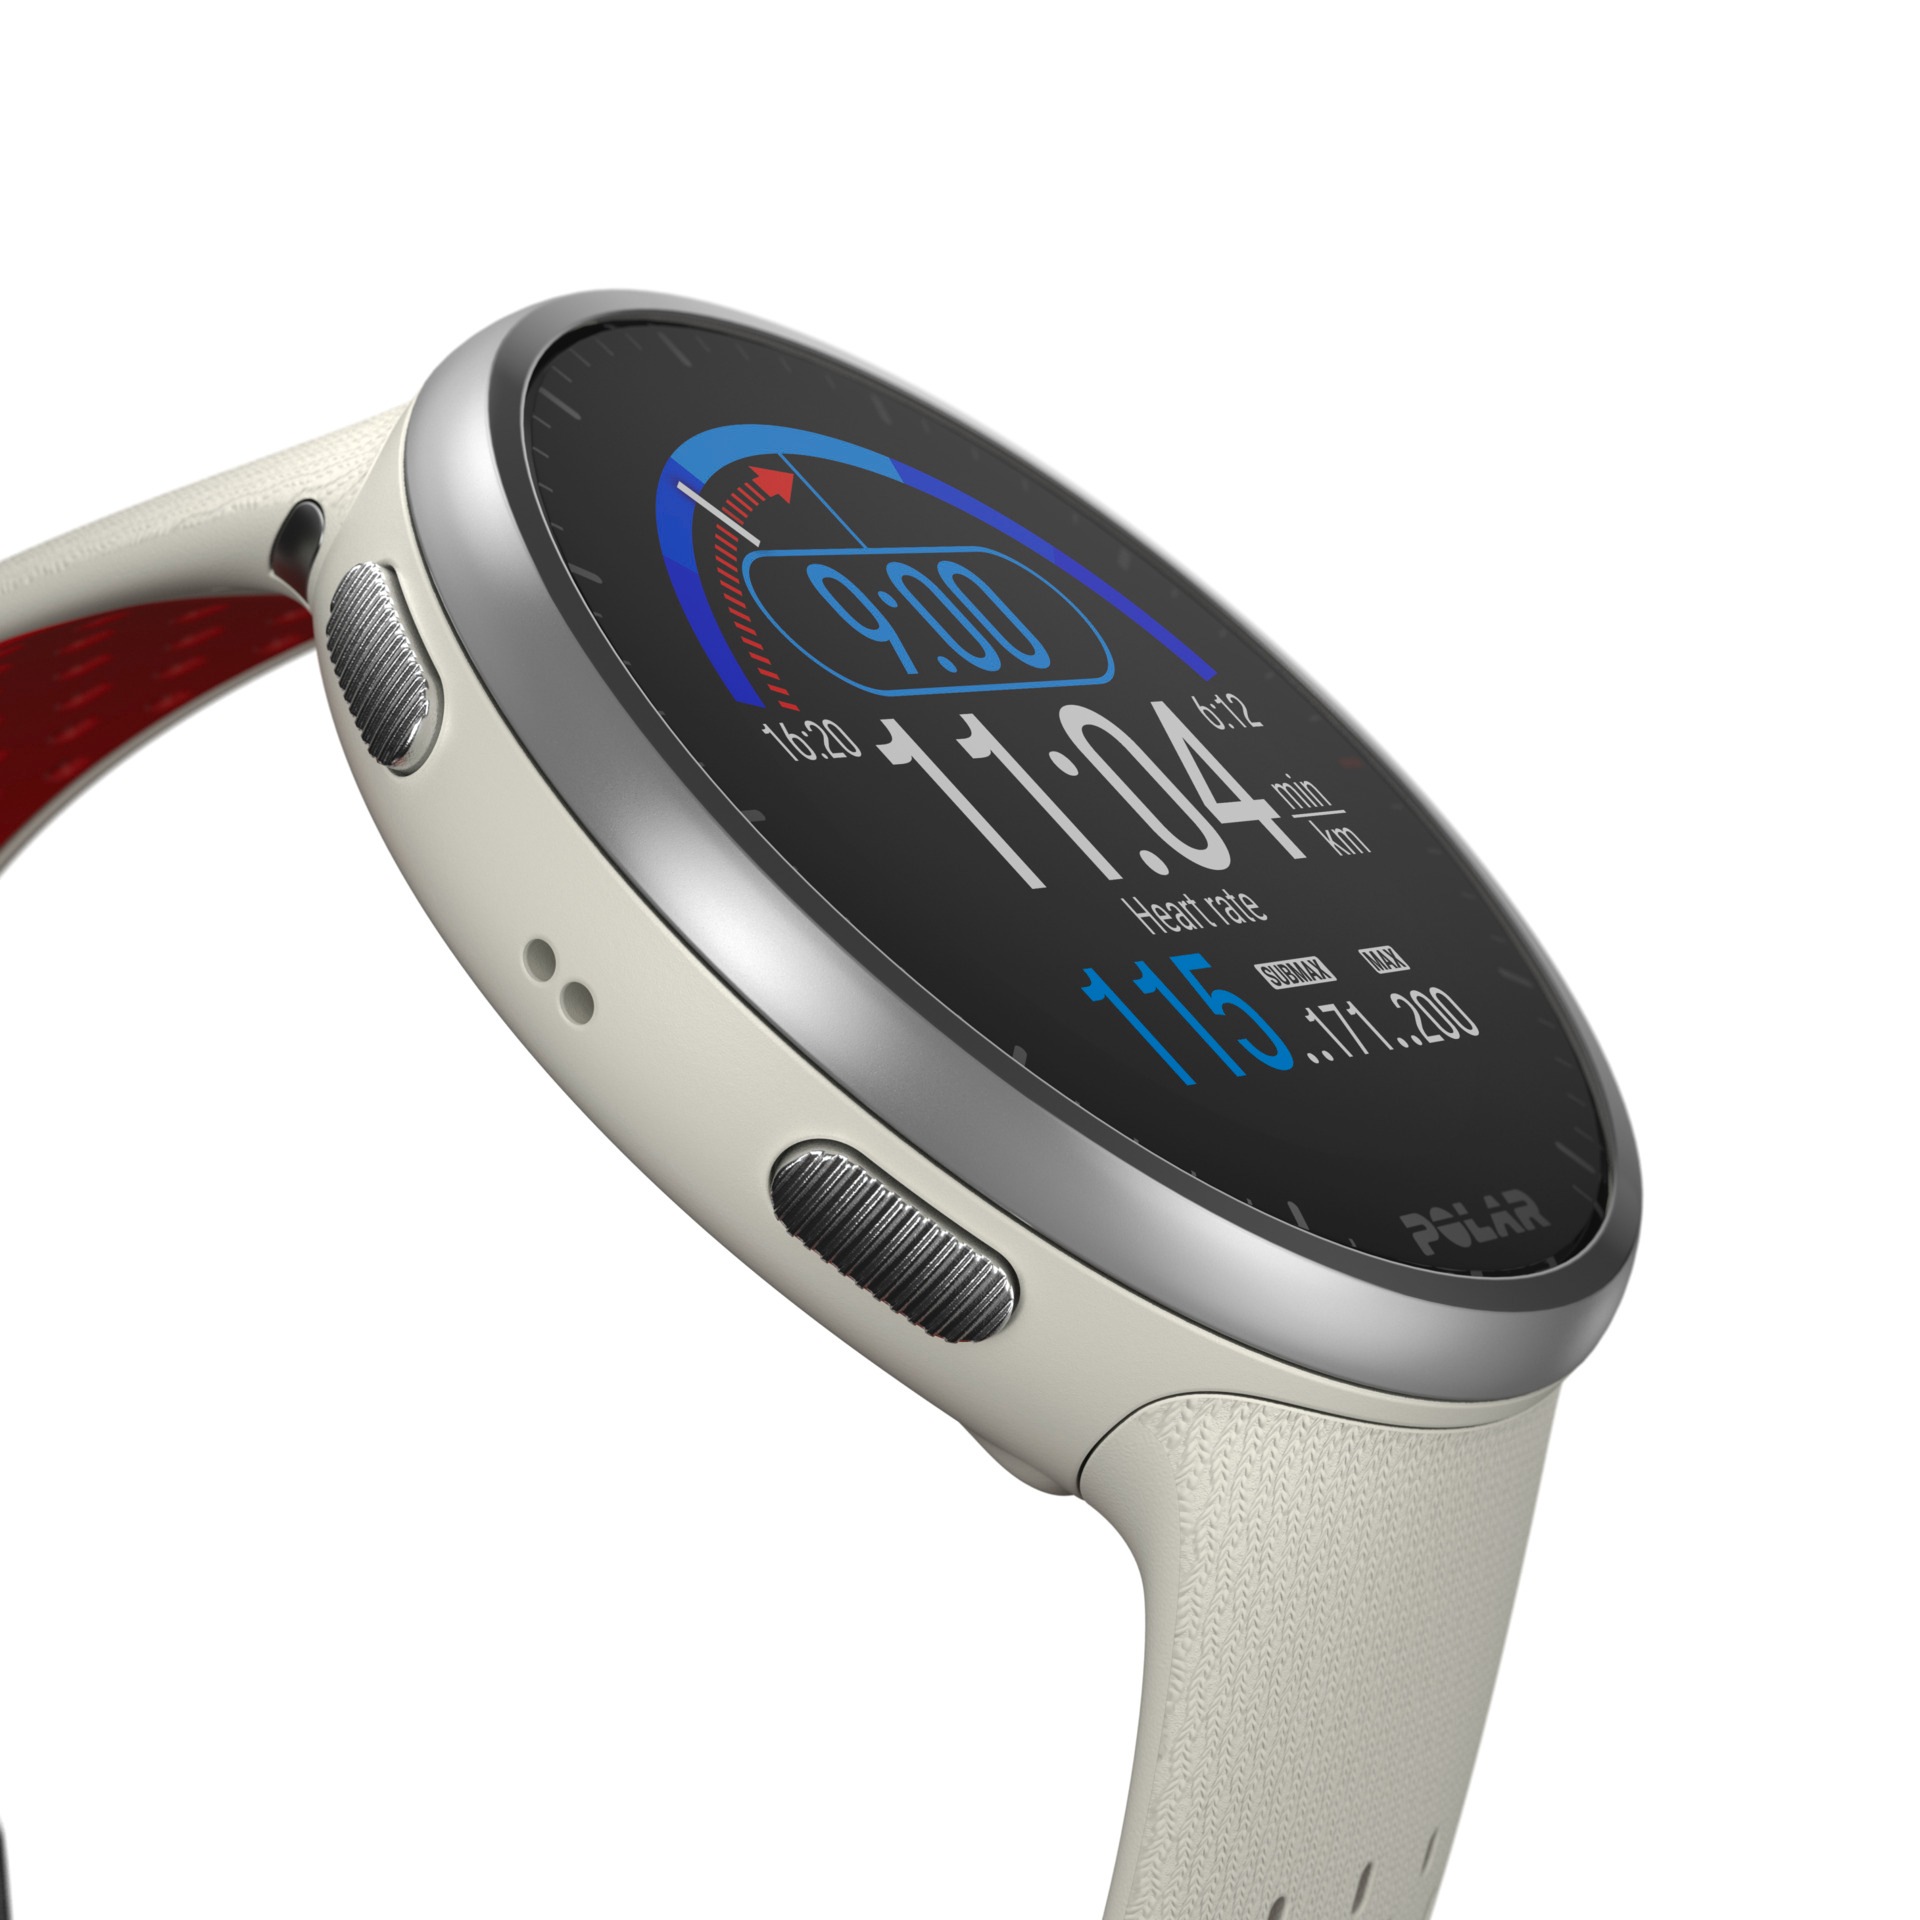 Polar Smartwatch »Pacer Pro«, (Proprietär)